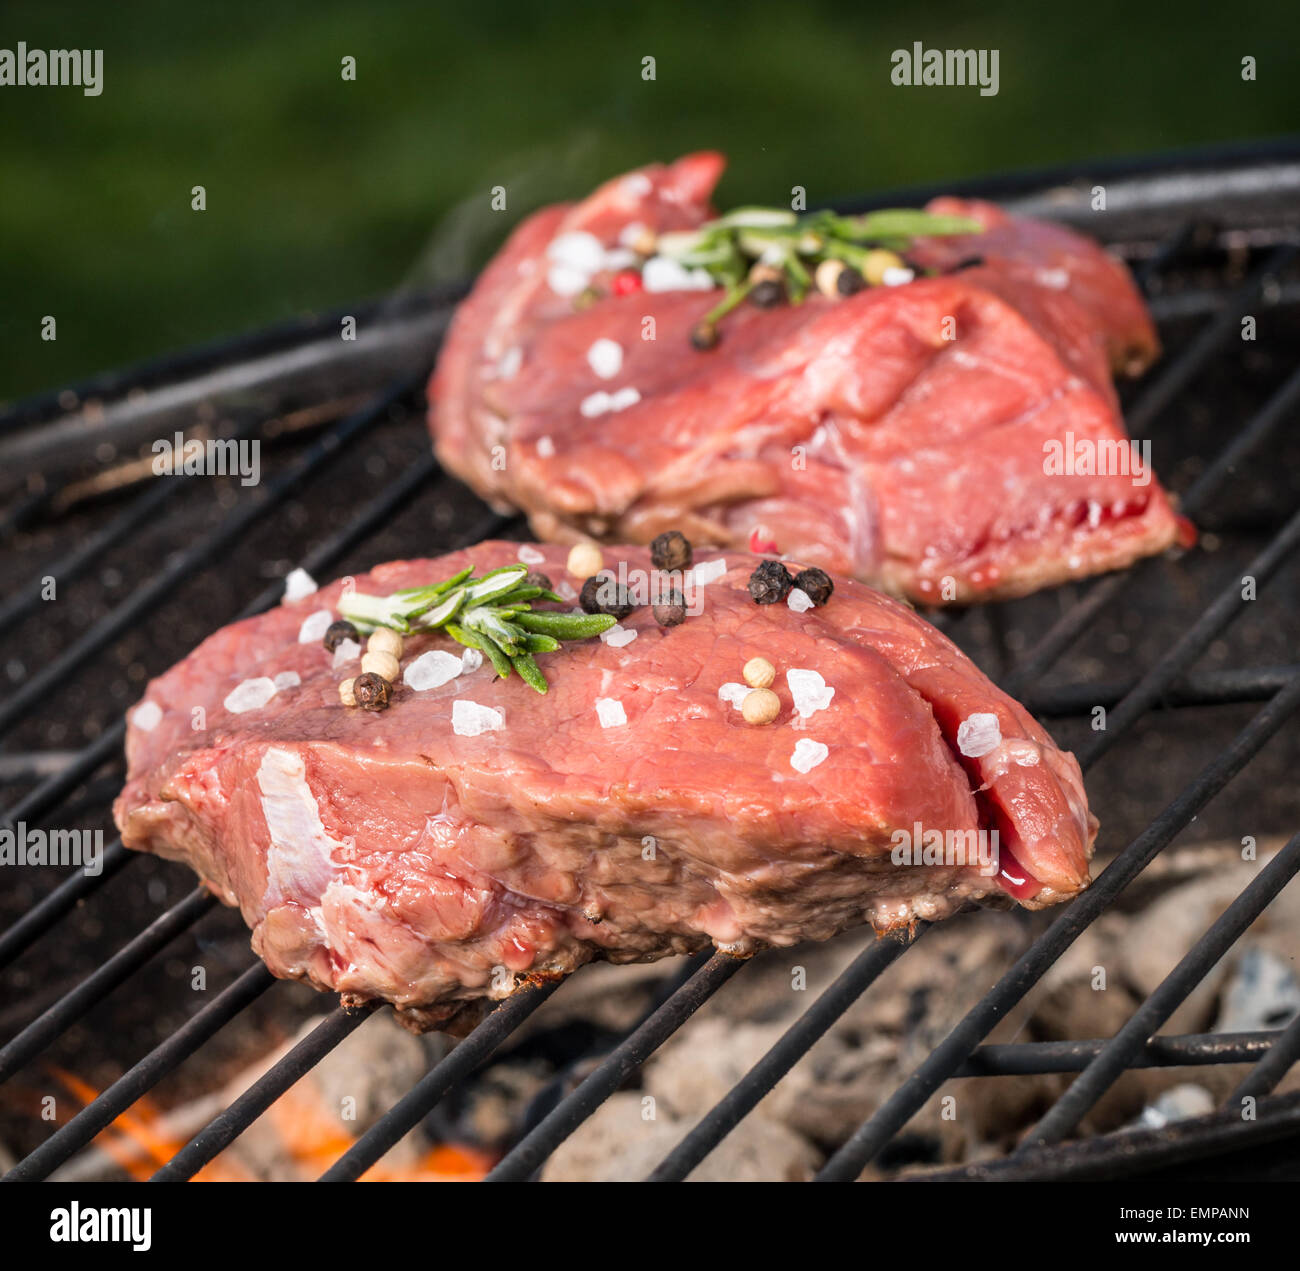 Rohes Rindfleisch Steaks am grill Stockfoto